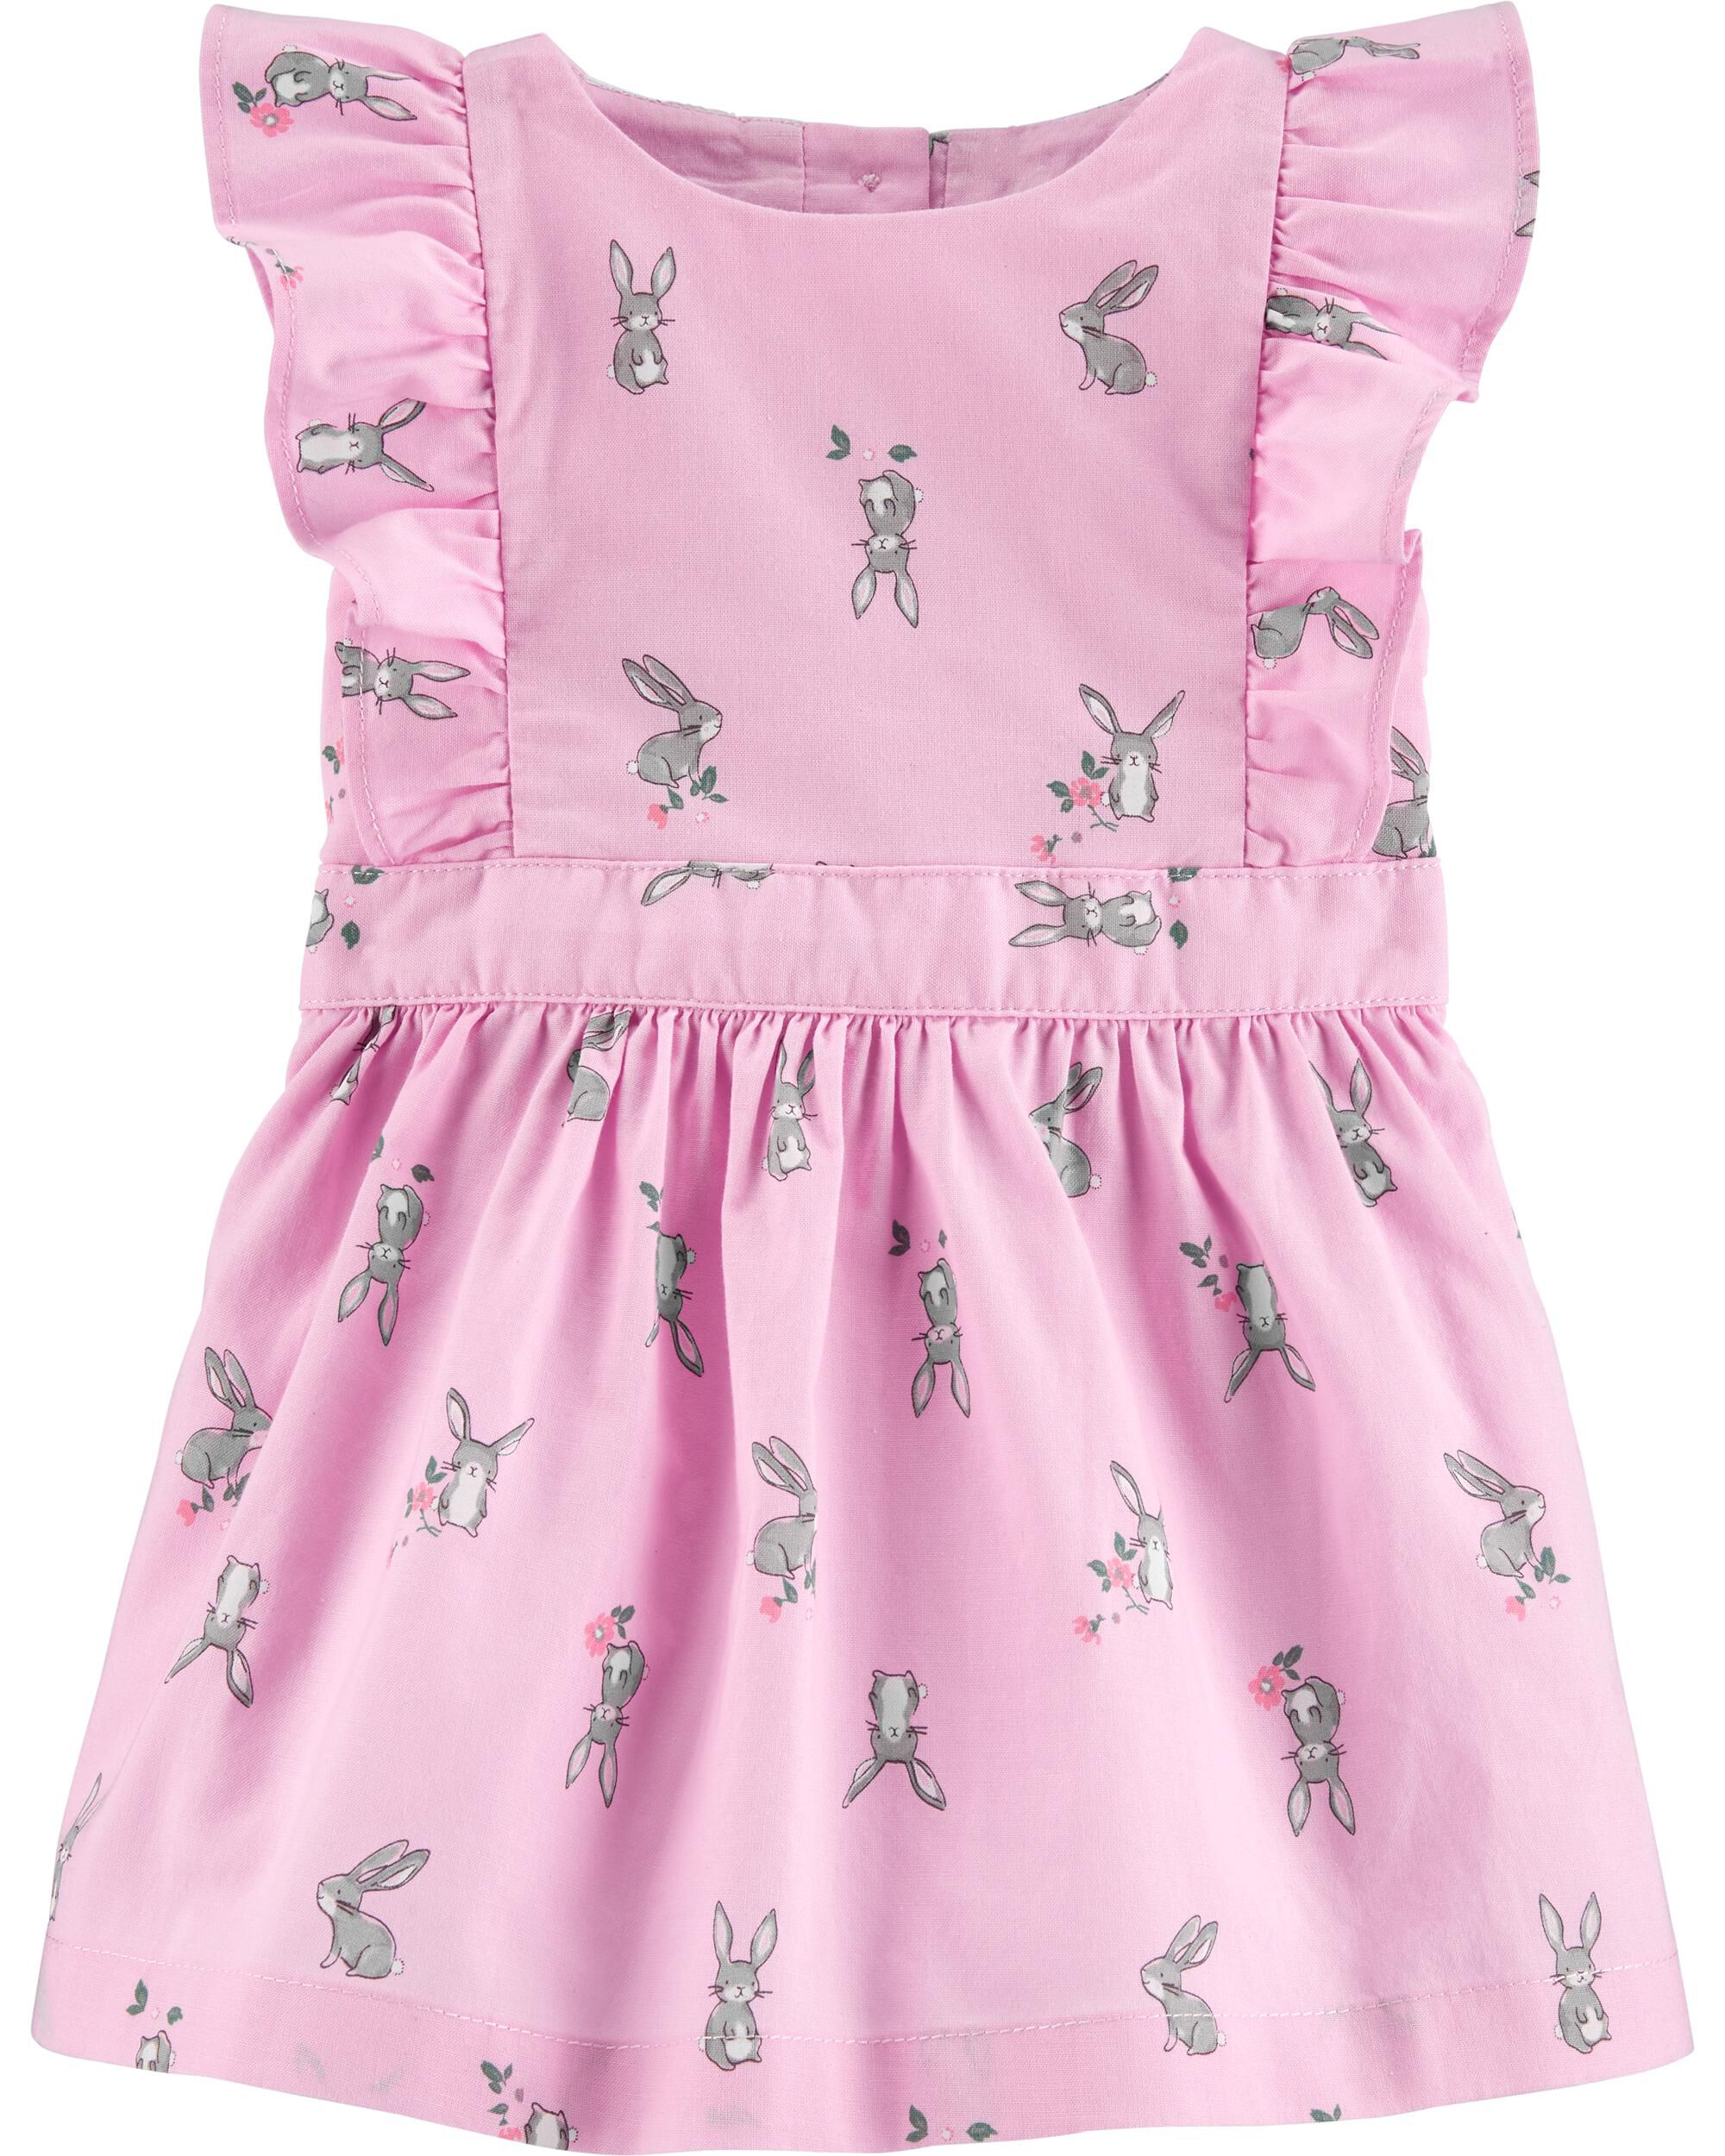 carters pink bunny dress